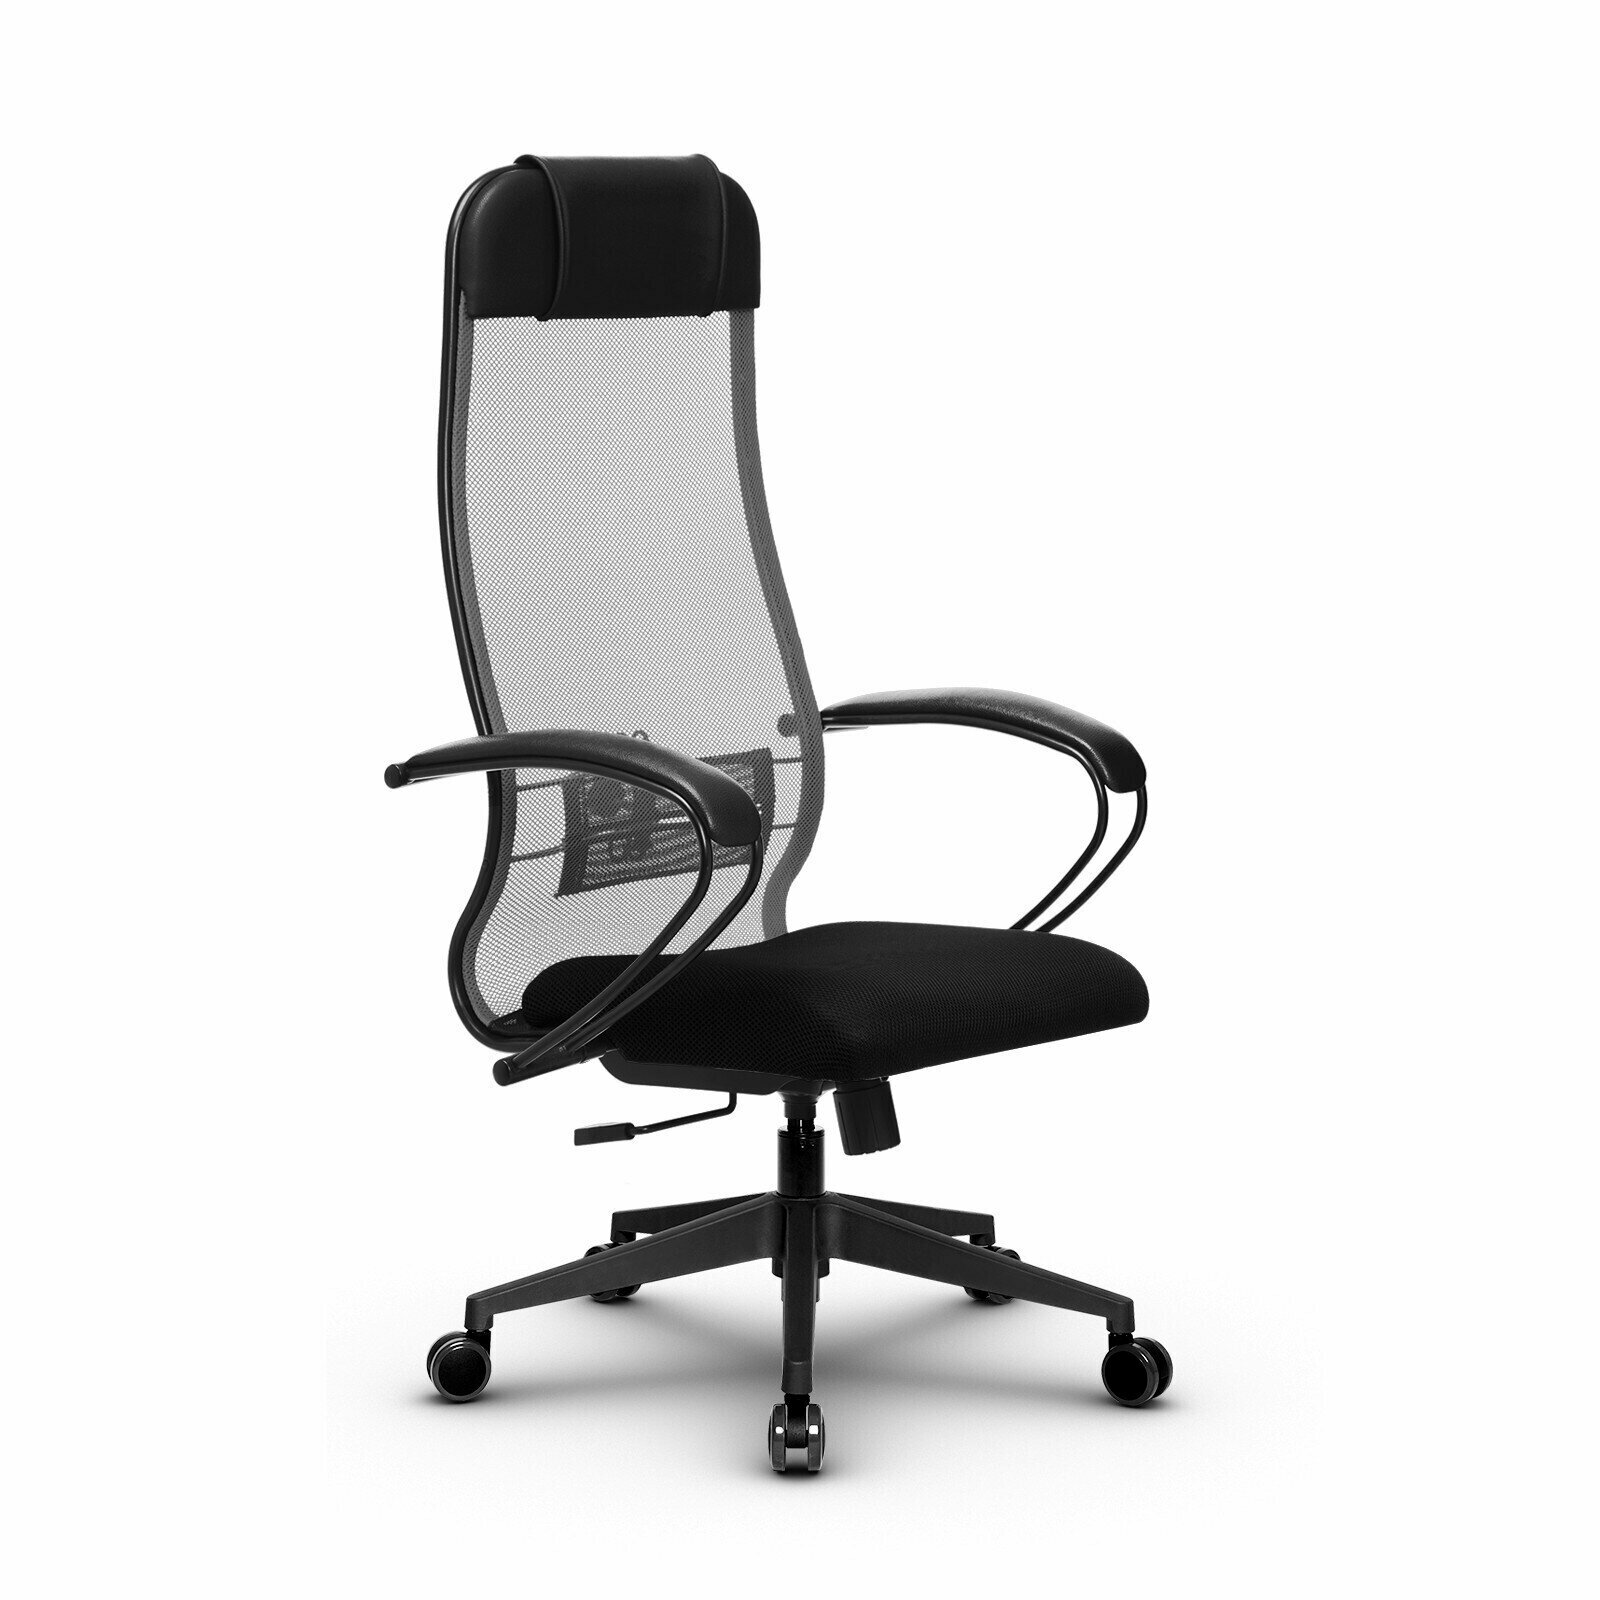 Компьютерное офисное кресло Metta Комплект 11, осн. 002 (17832), Светло-серое/Черное